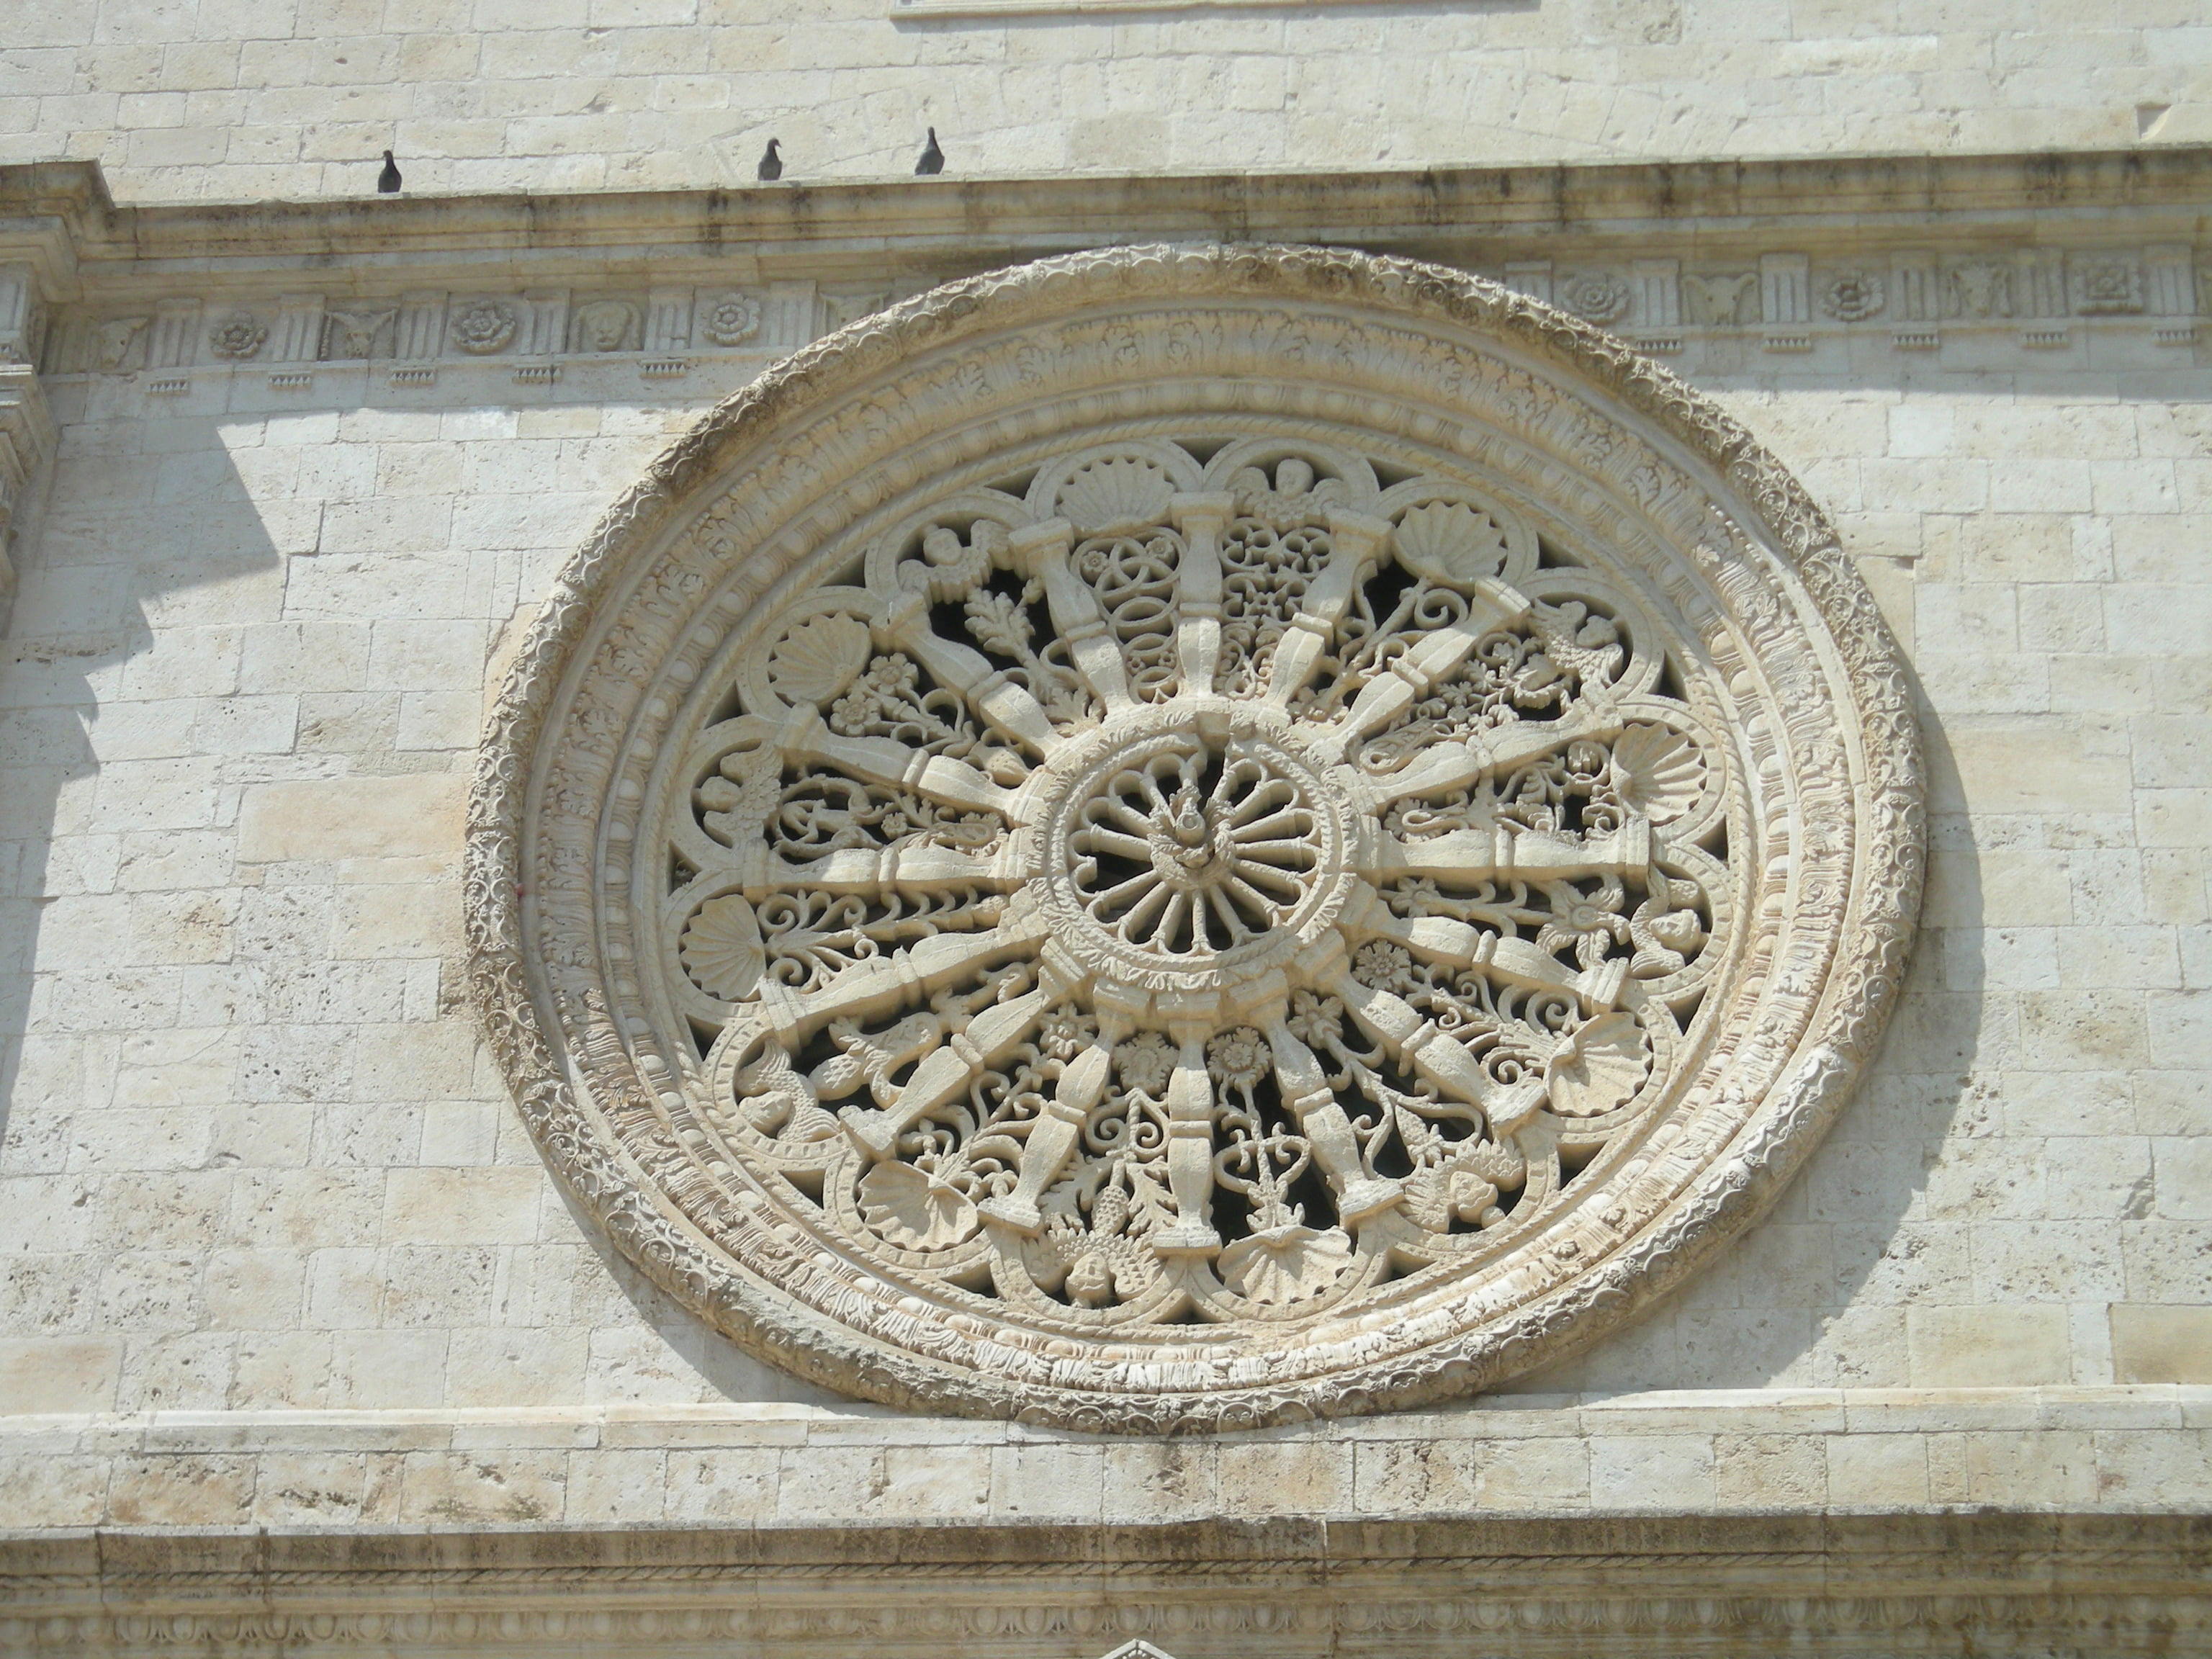 Acquaviva delle Fonti Cathedral